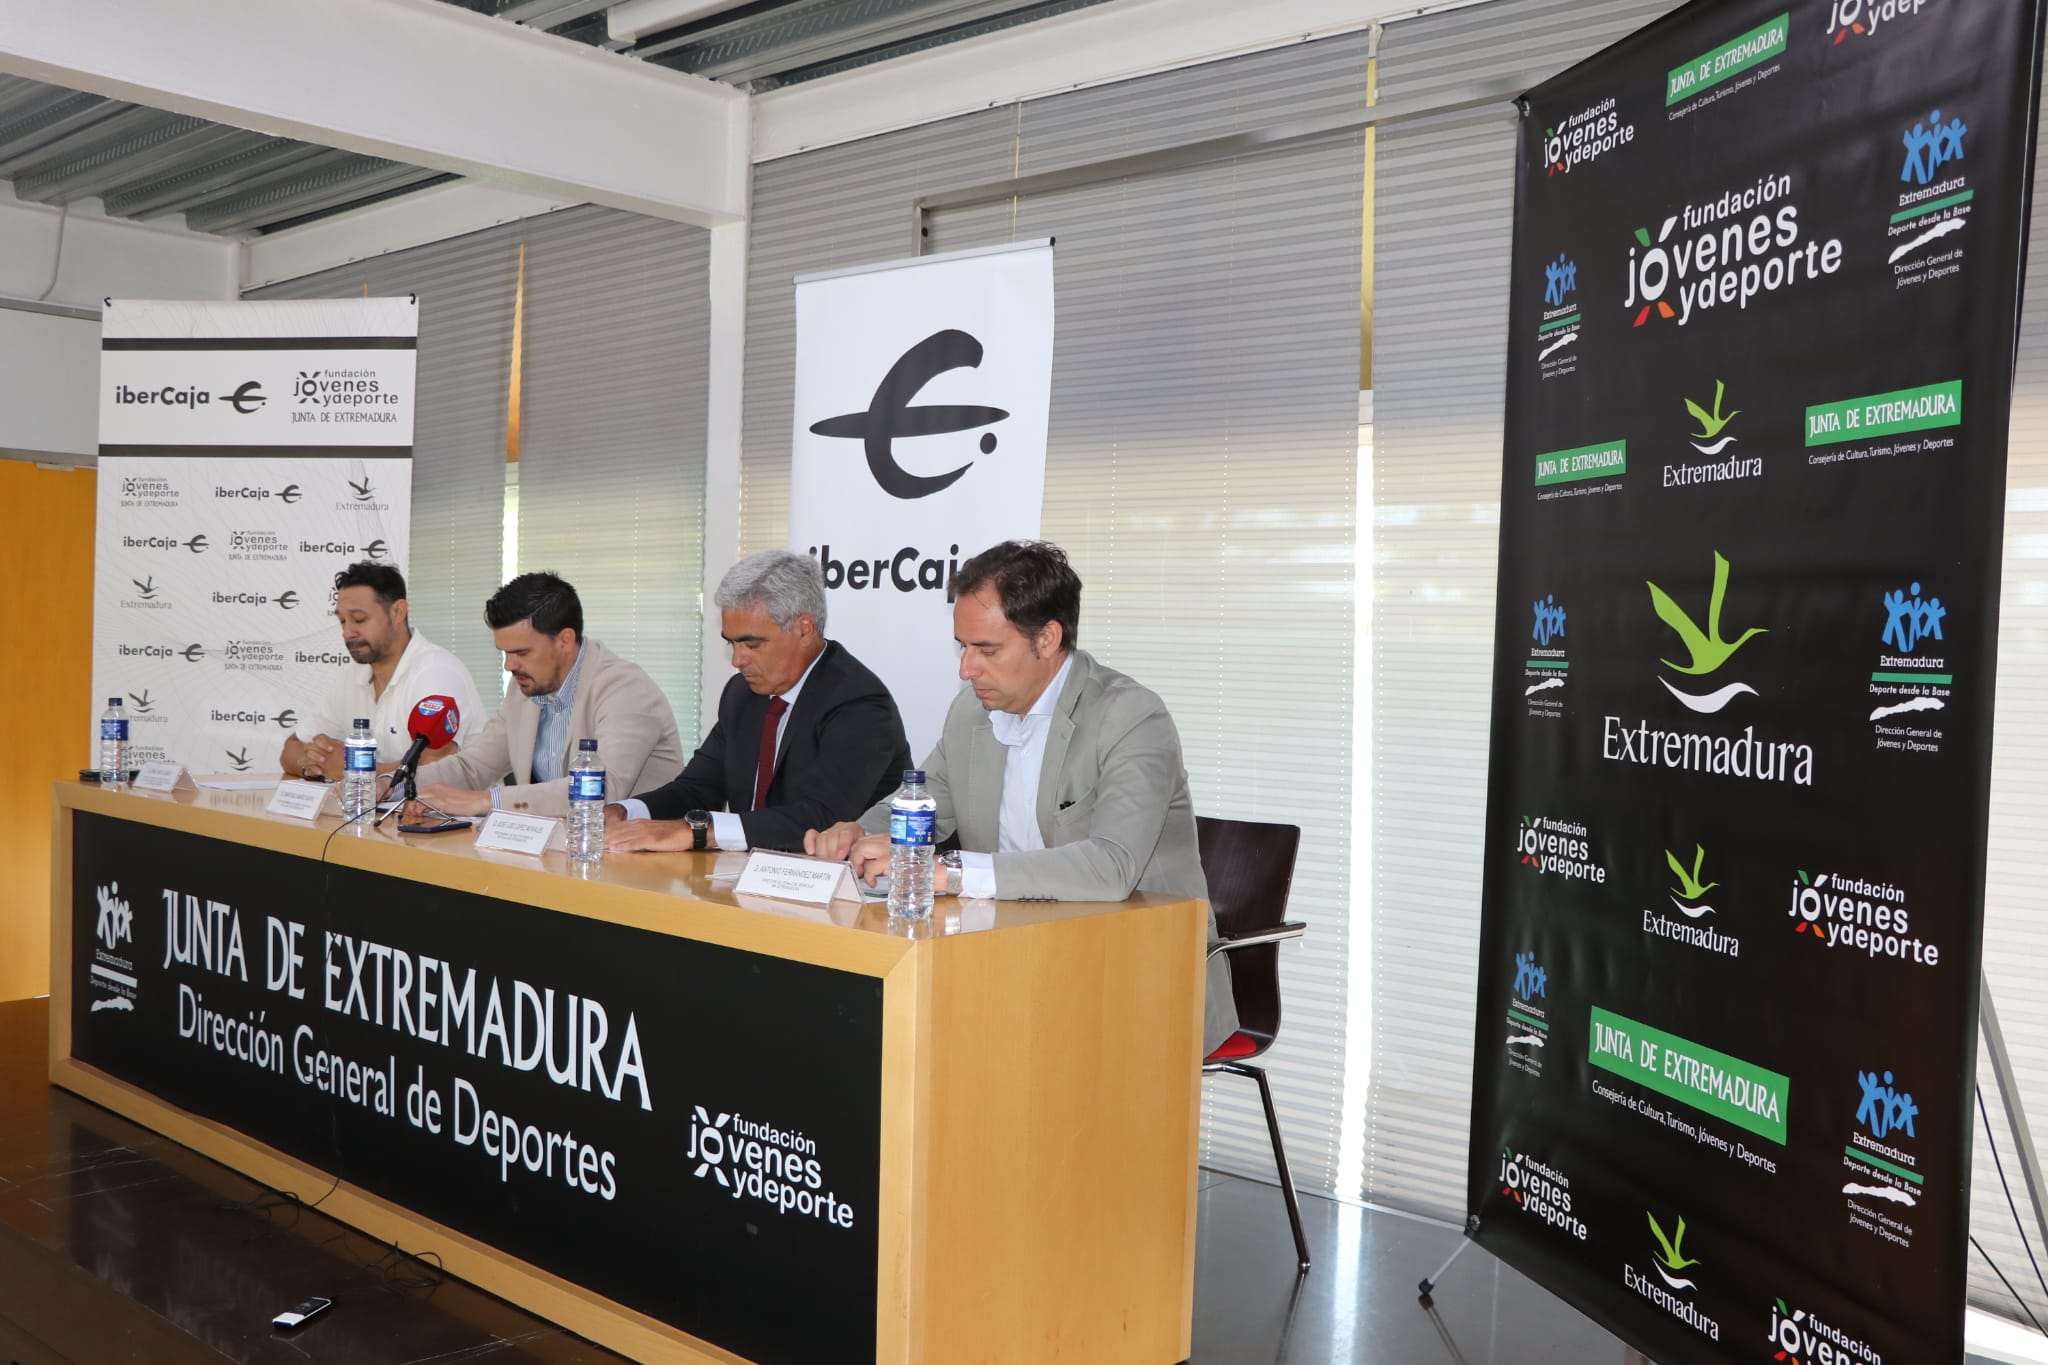 Image 2 of article La Fundación Jóvenes y Deportes renueva su acuerdo de colaboración con Ibercaja para potenciar los valores del deporte en Extremadura